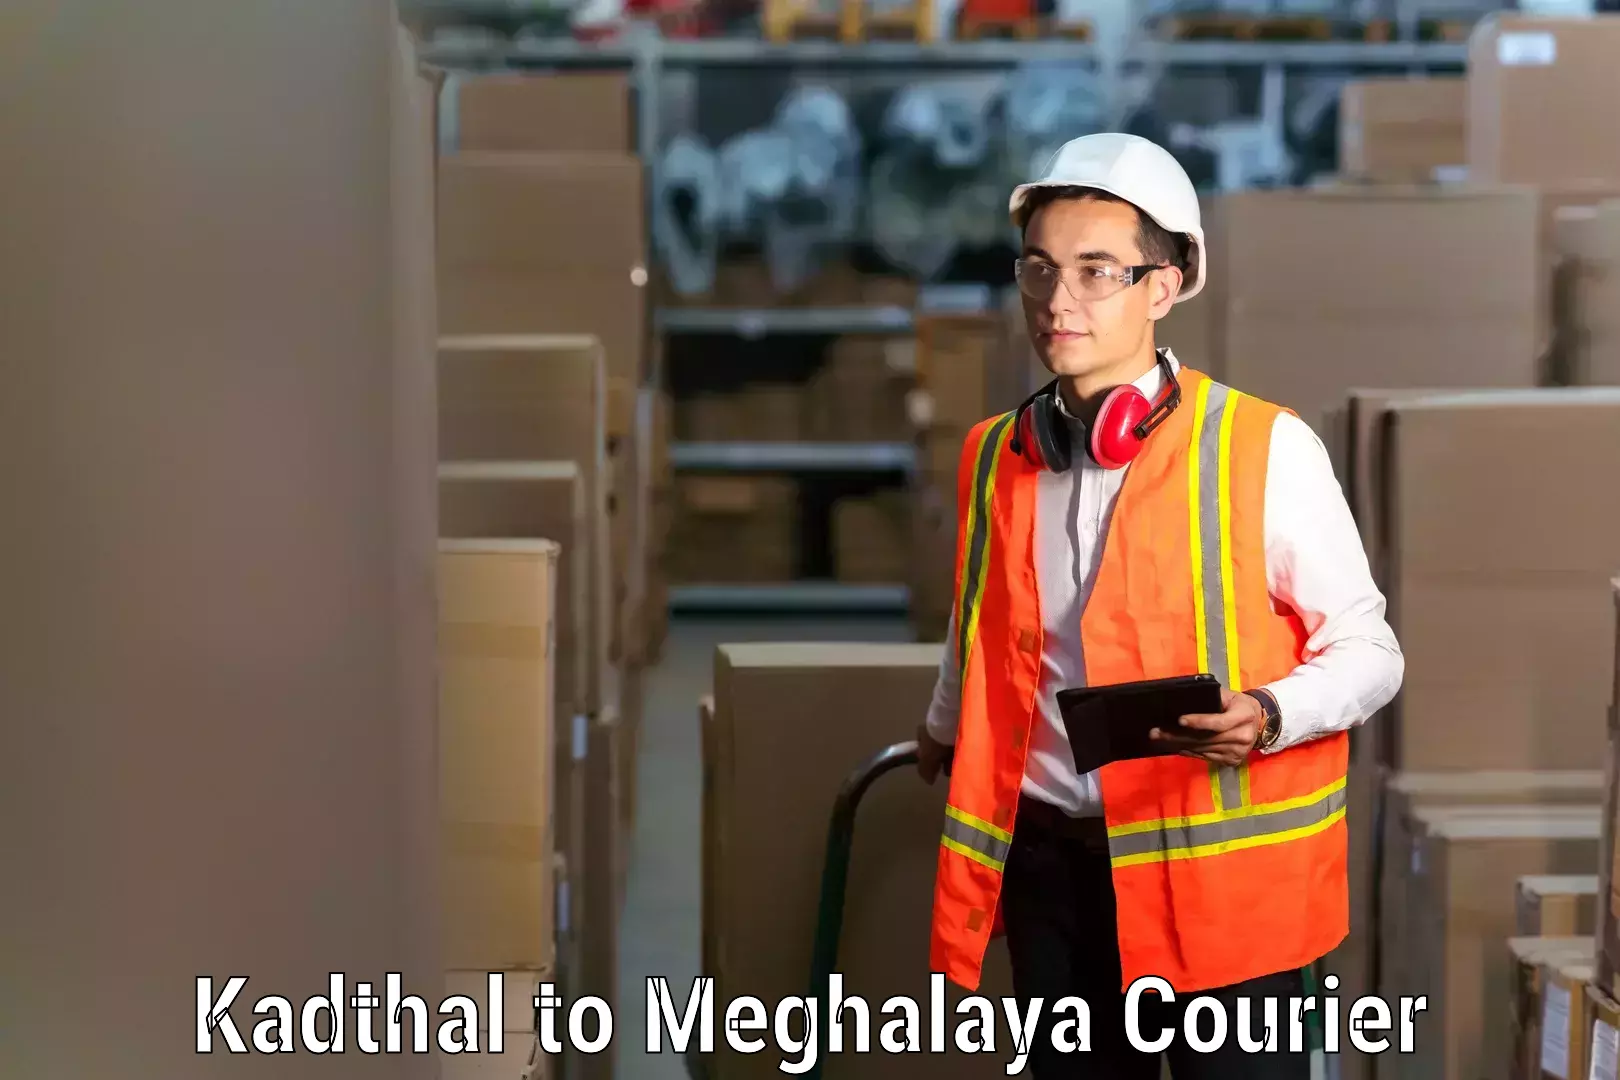 Home shifting experts Kadthal to Meghalaya